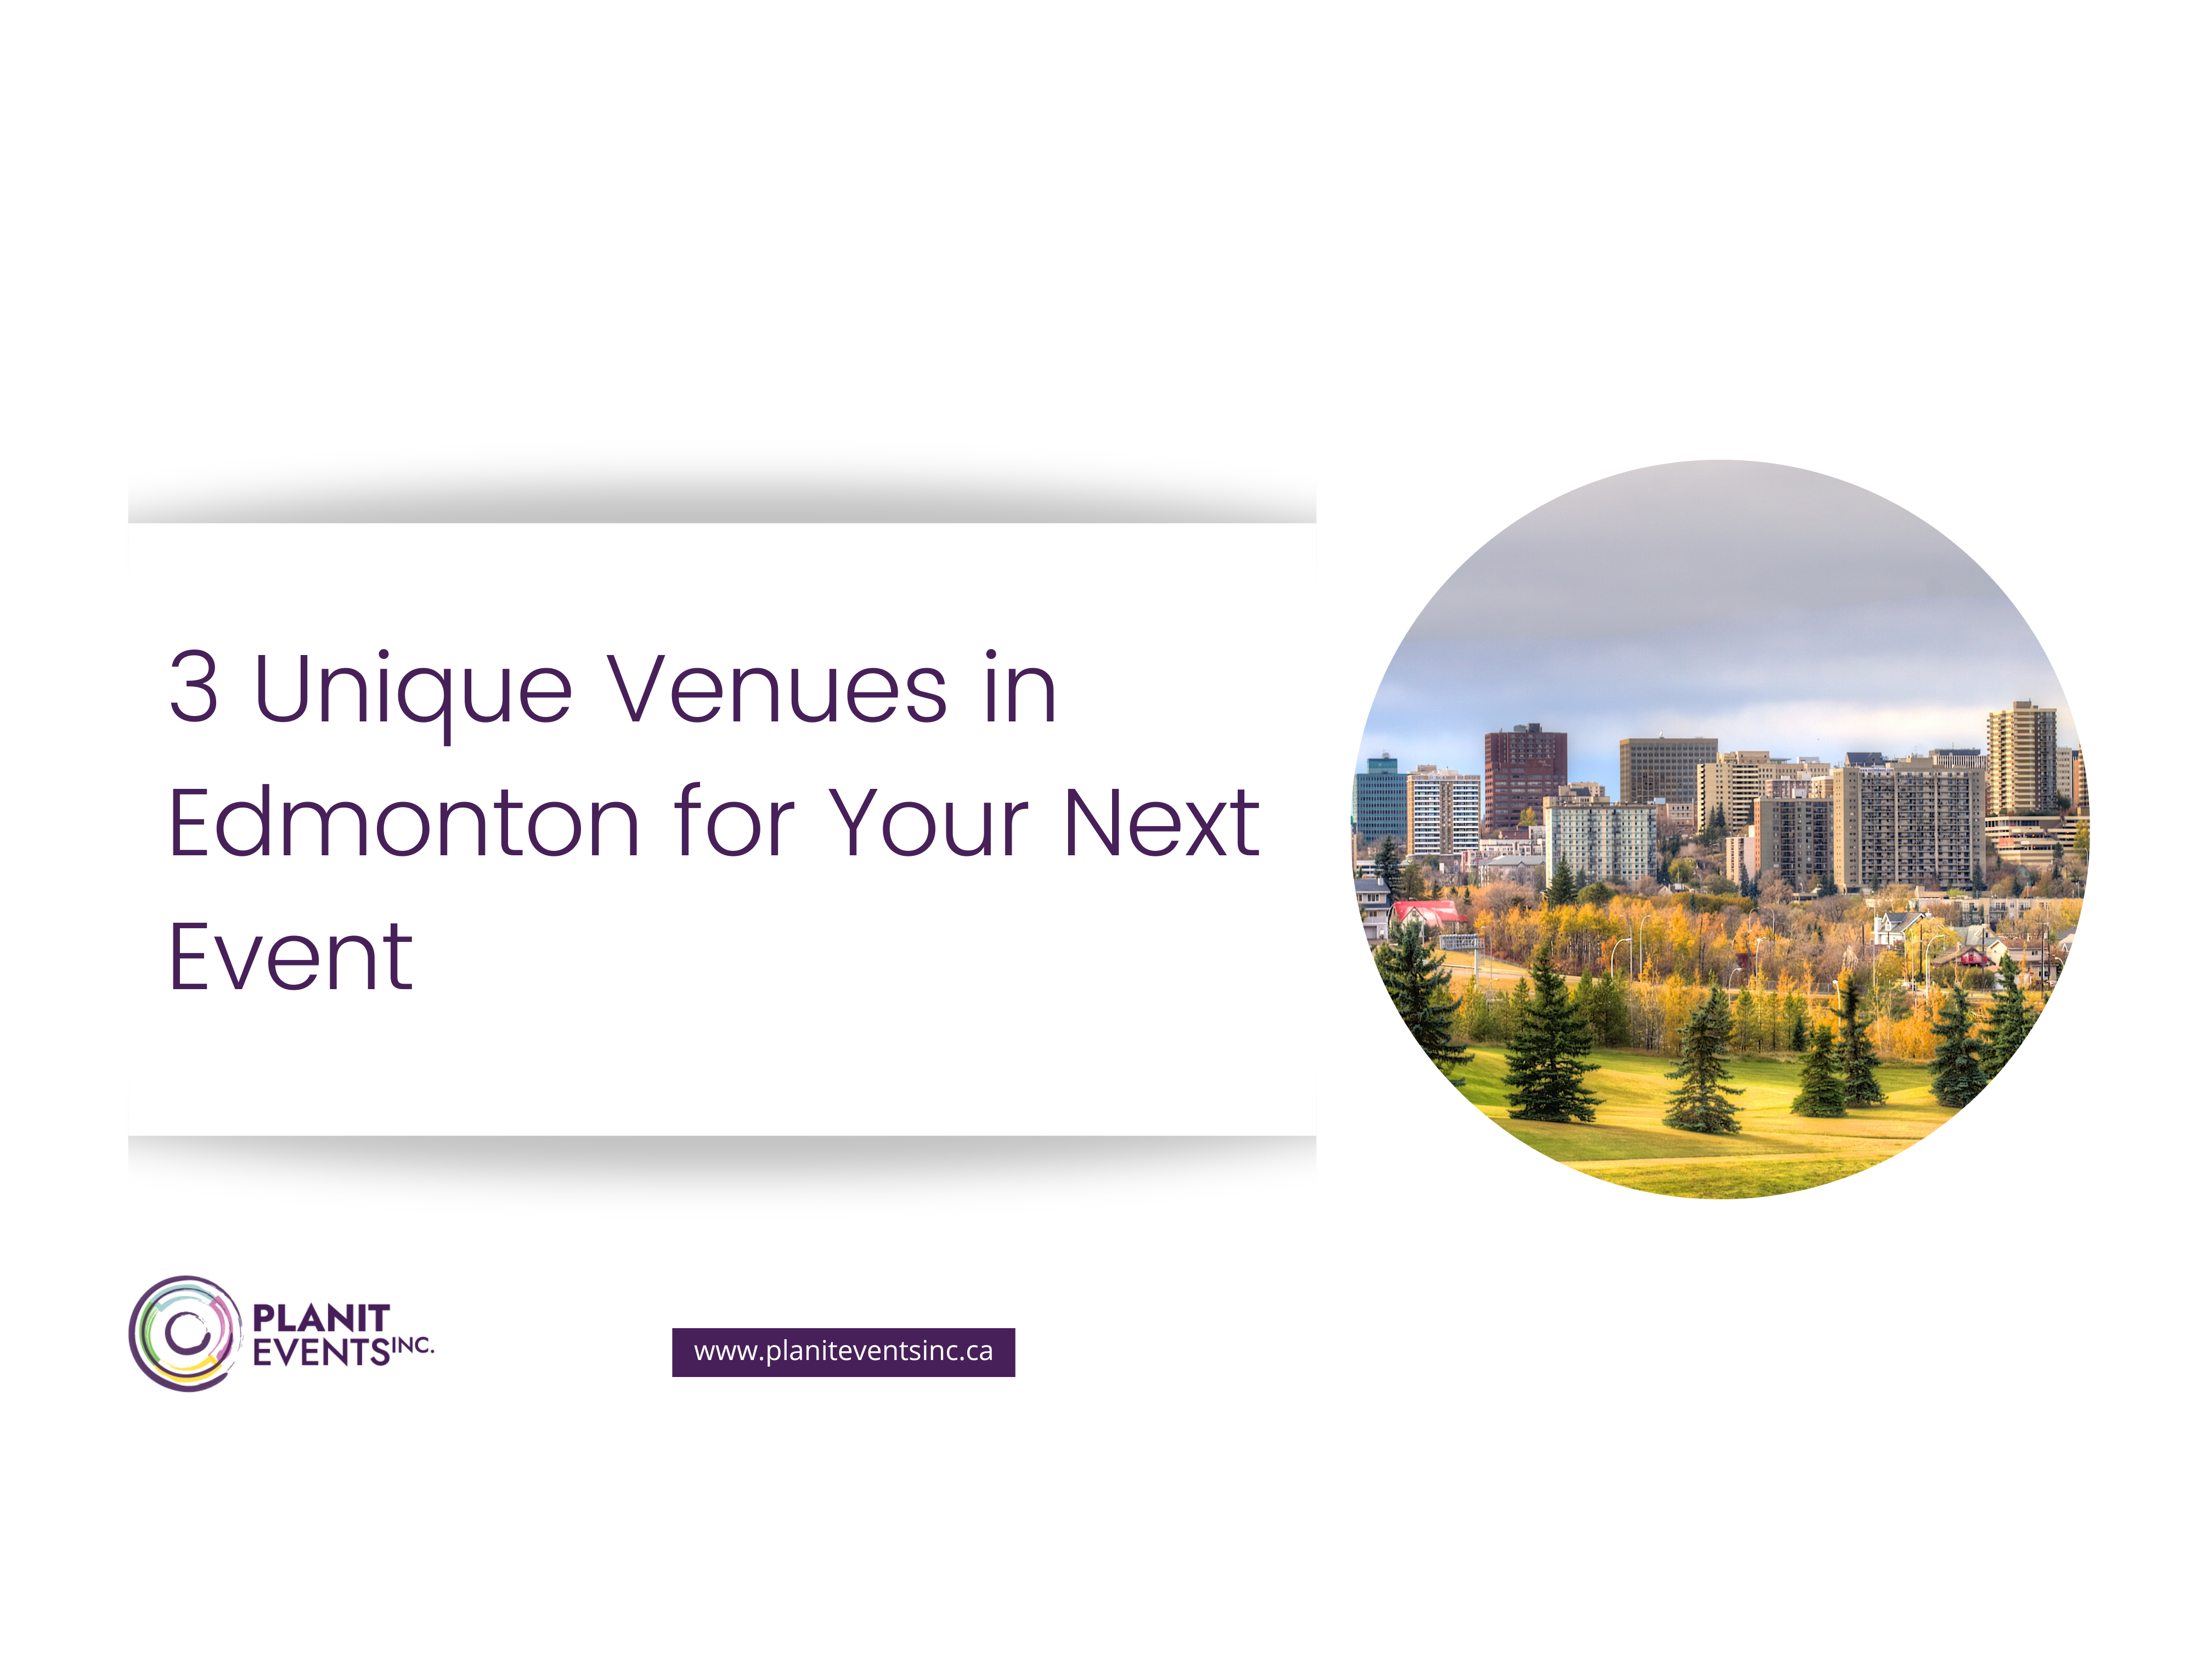 3 Unique Venues to Edmonton for Your Next Event